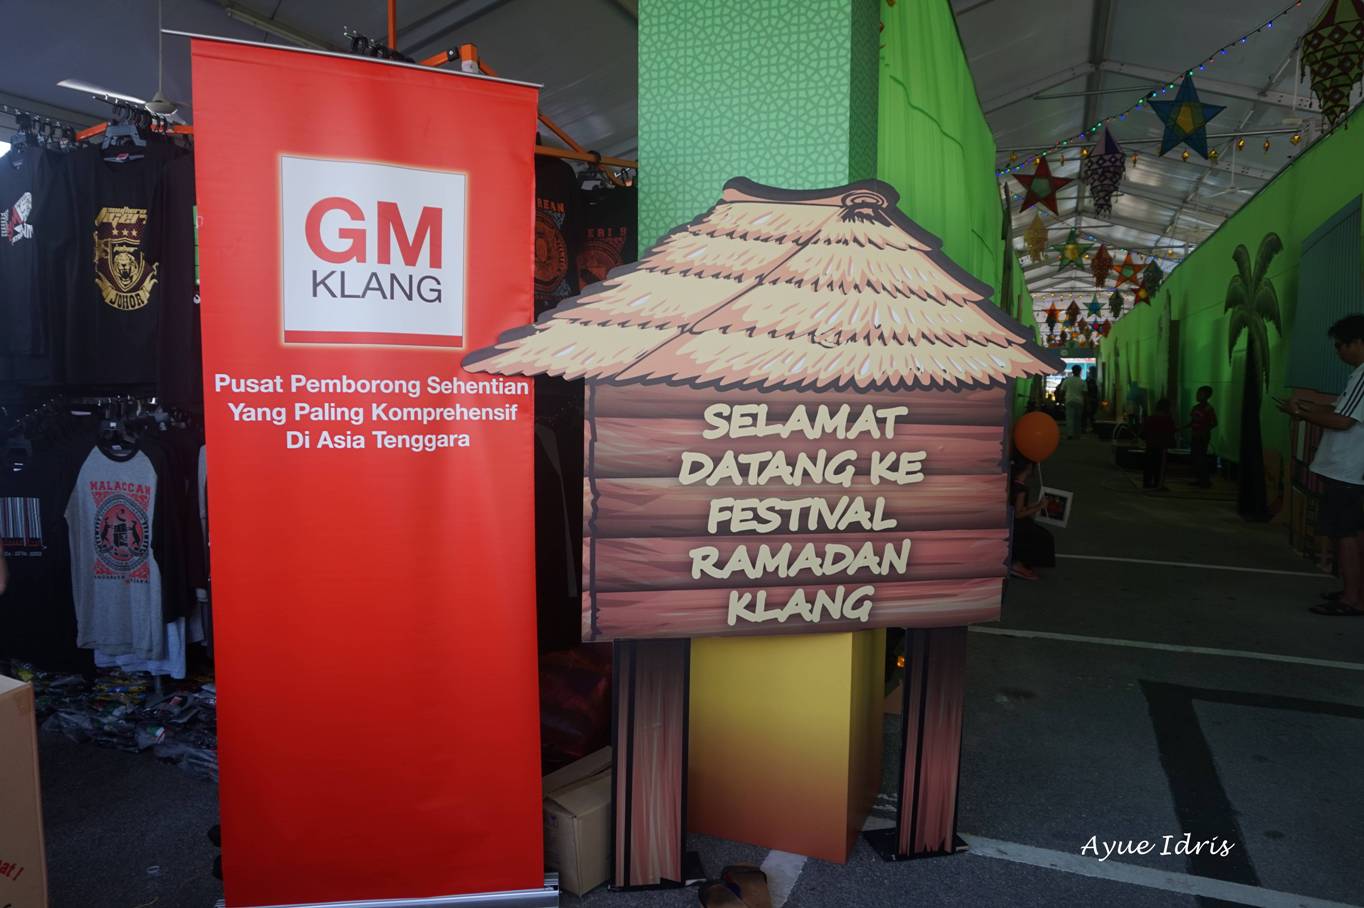 Festival Ramadhan Klang 2015  GM Klang - Ayue Idris